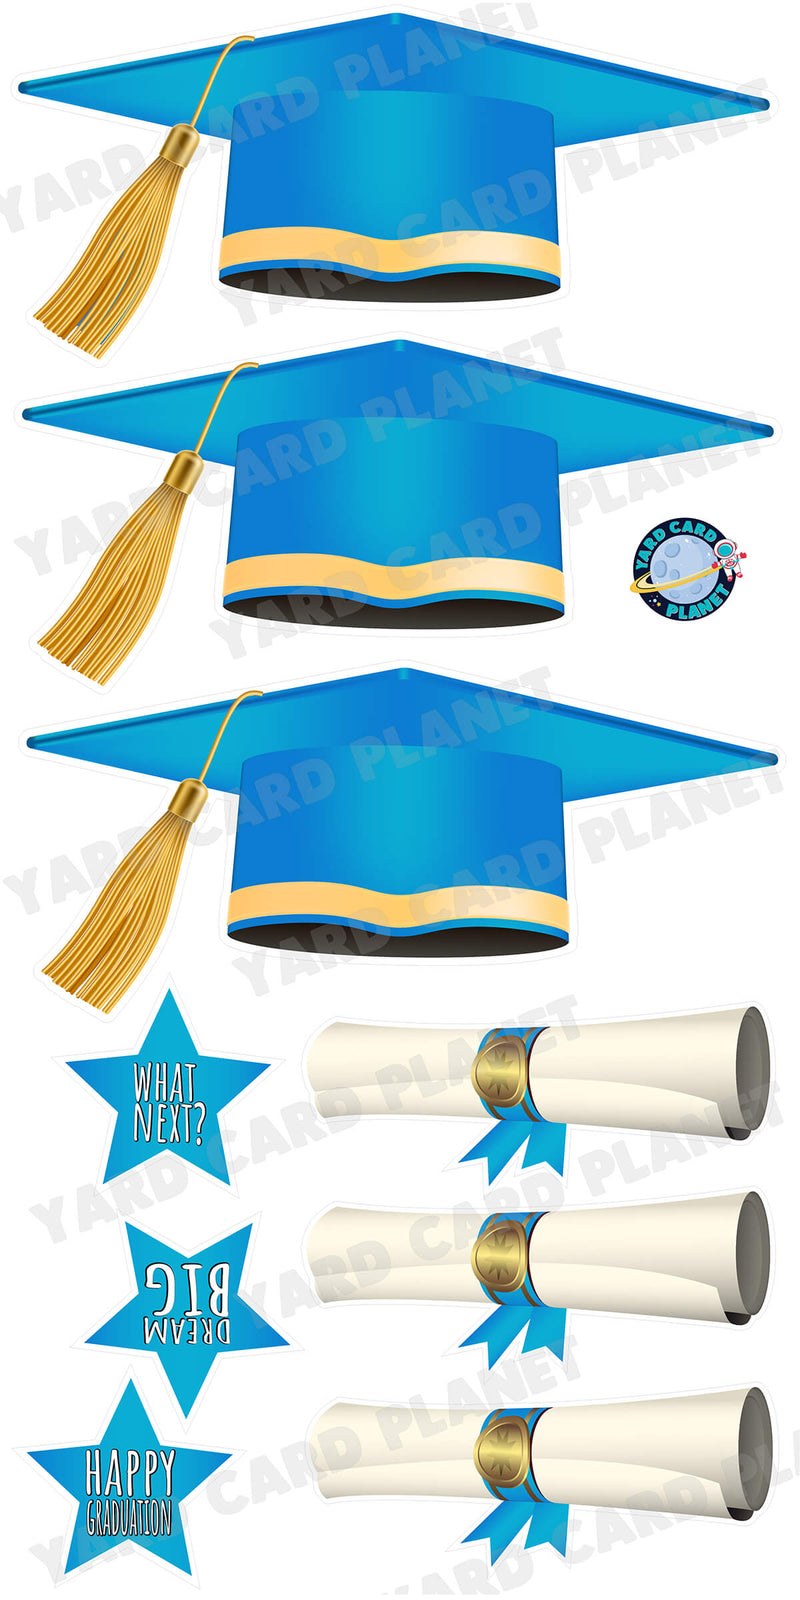 Extra Large Light Blue Graduation Caps, Diplomas and Signs Yard Card Flair Set